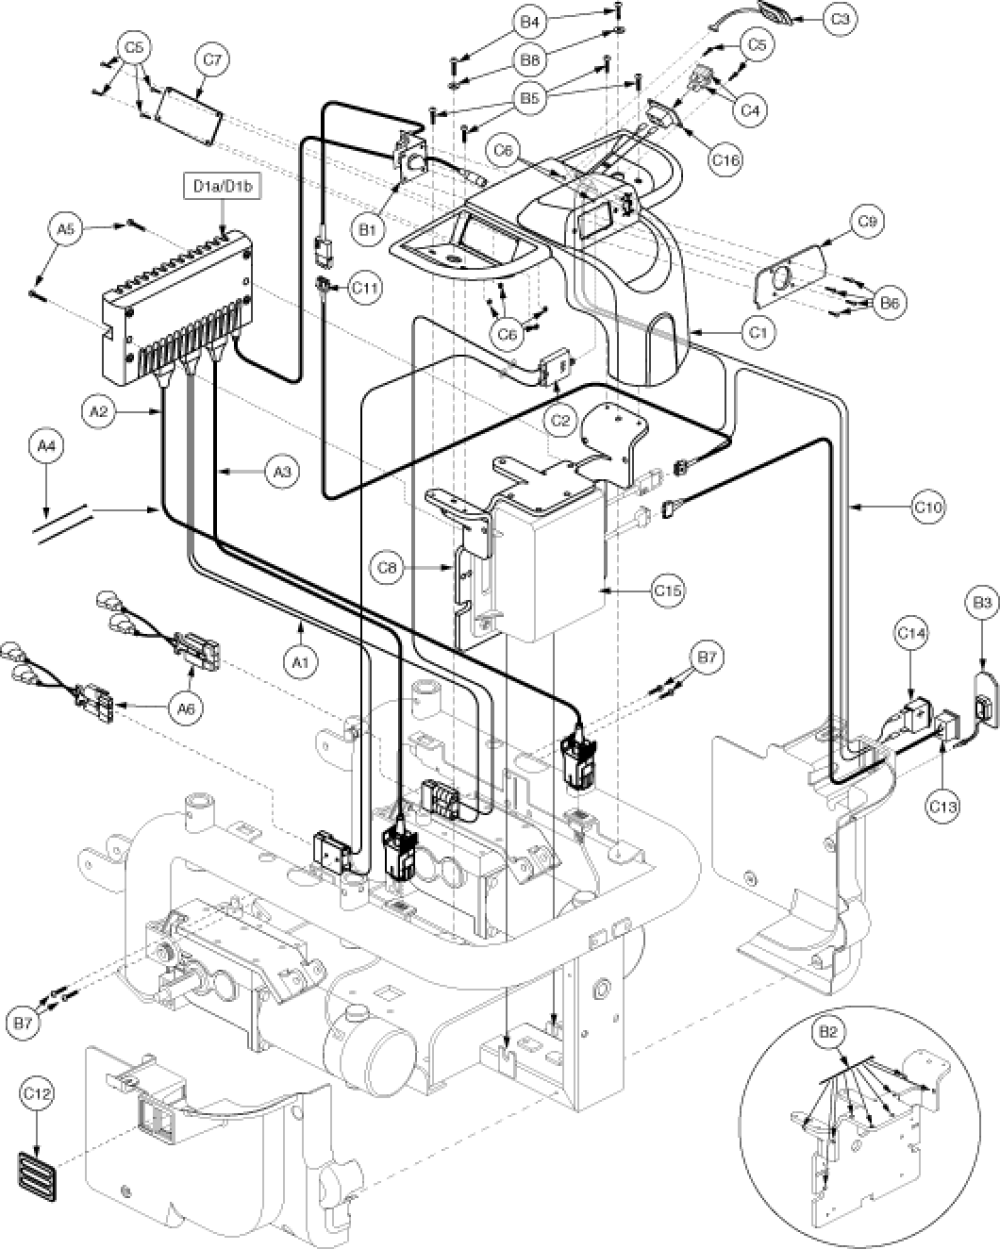 Remote Plus Tray, Domestic, Eleasmb2985 parts diagram